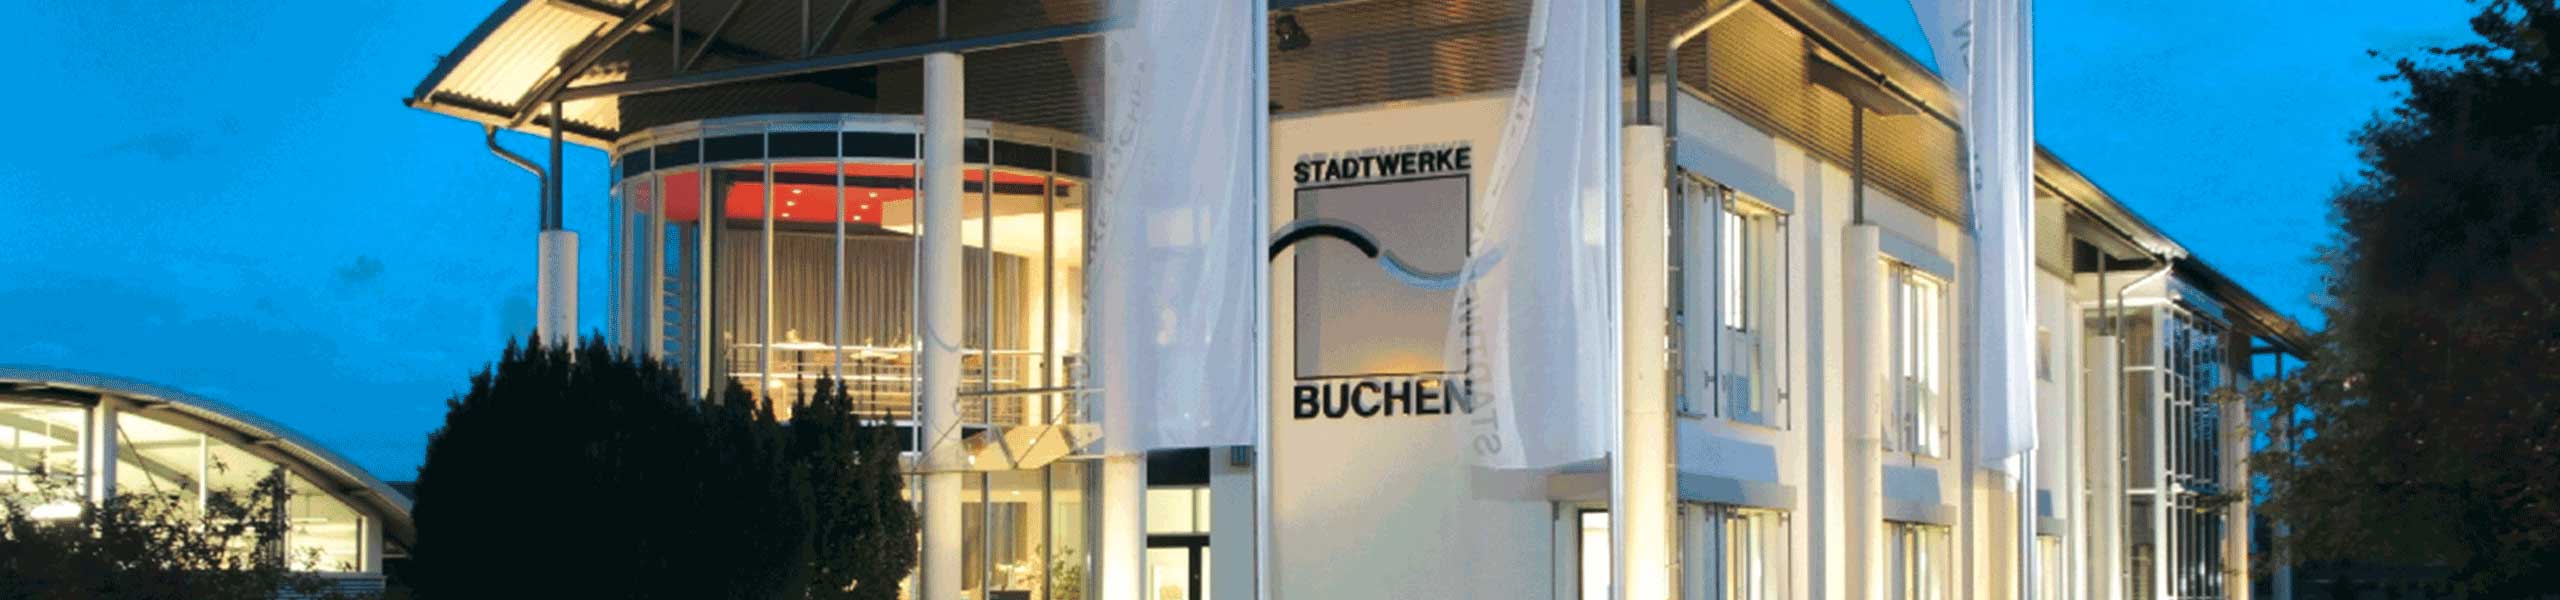 Stadtwerke Buchen GmbH & Co KG - Gas